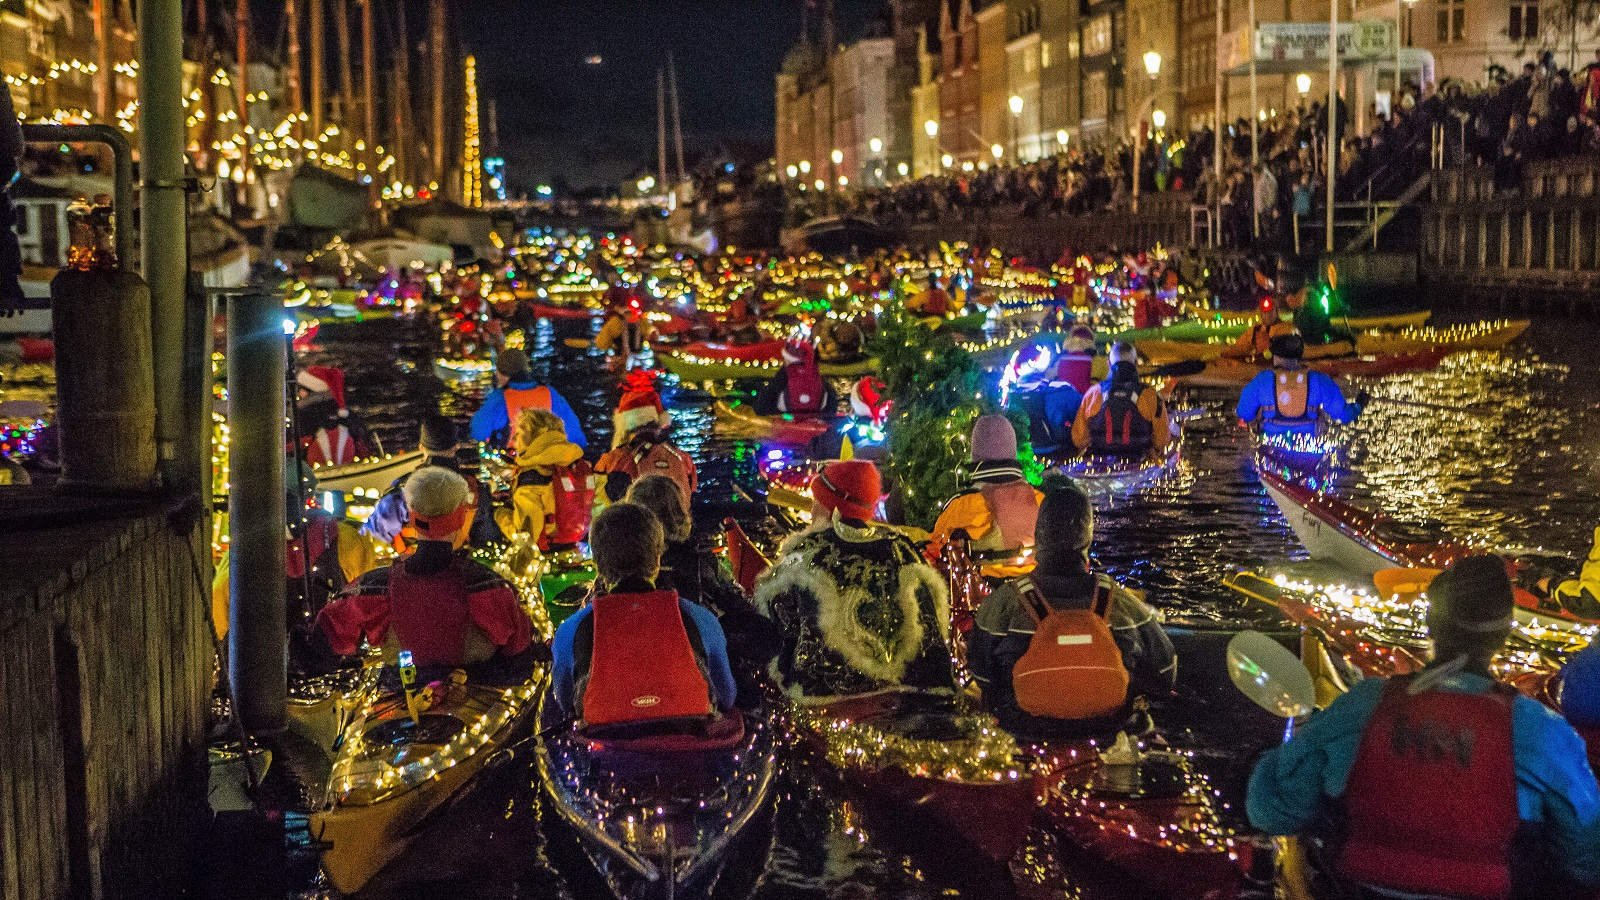 Copenhagen in Christmas